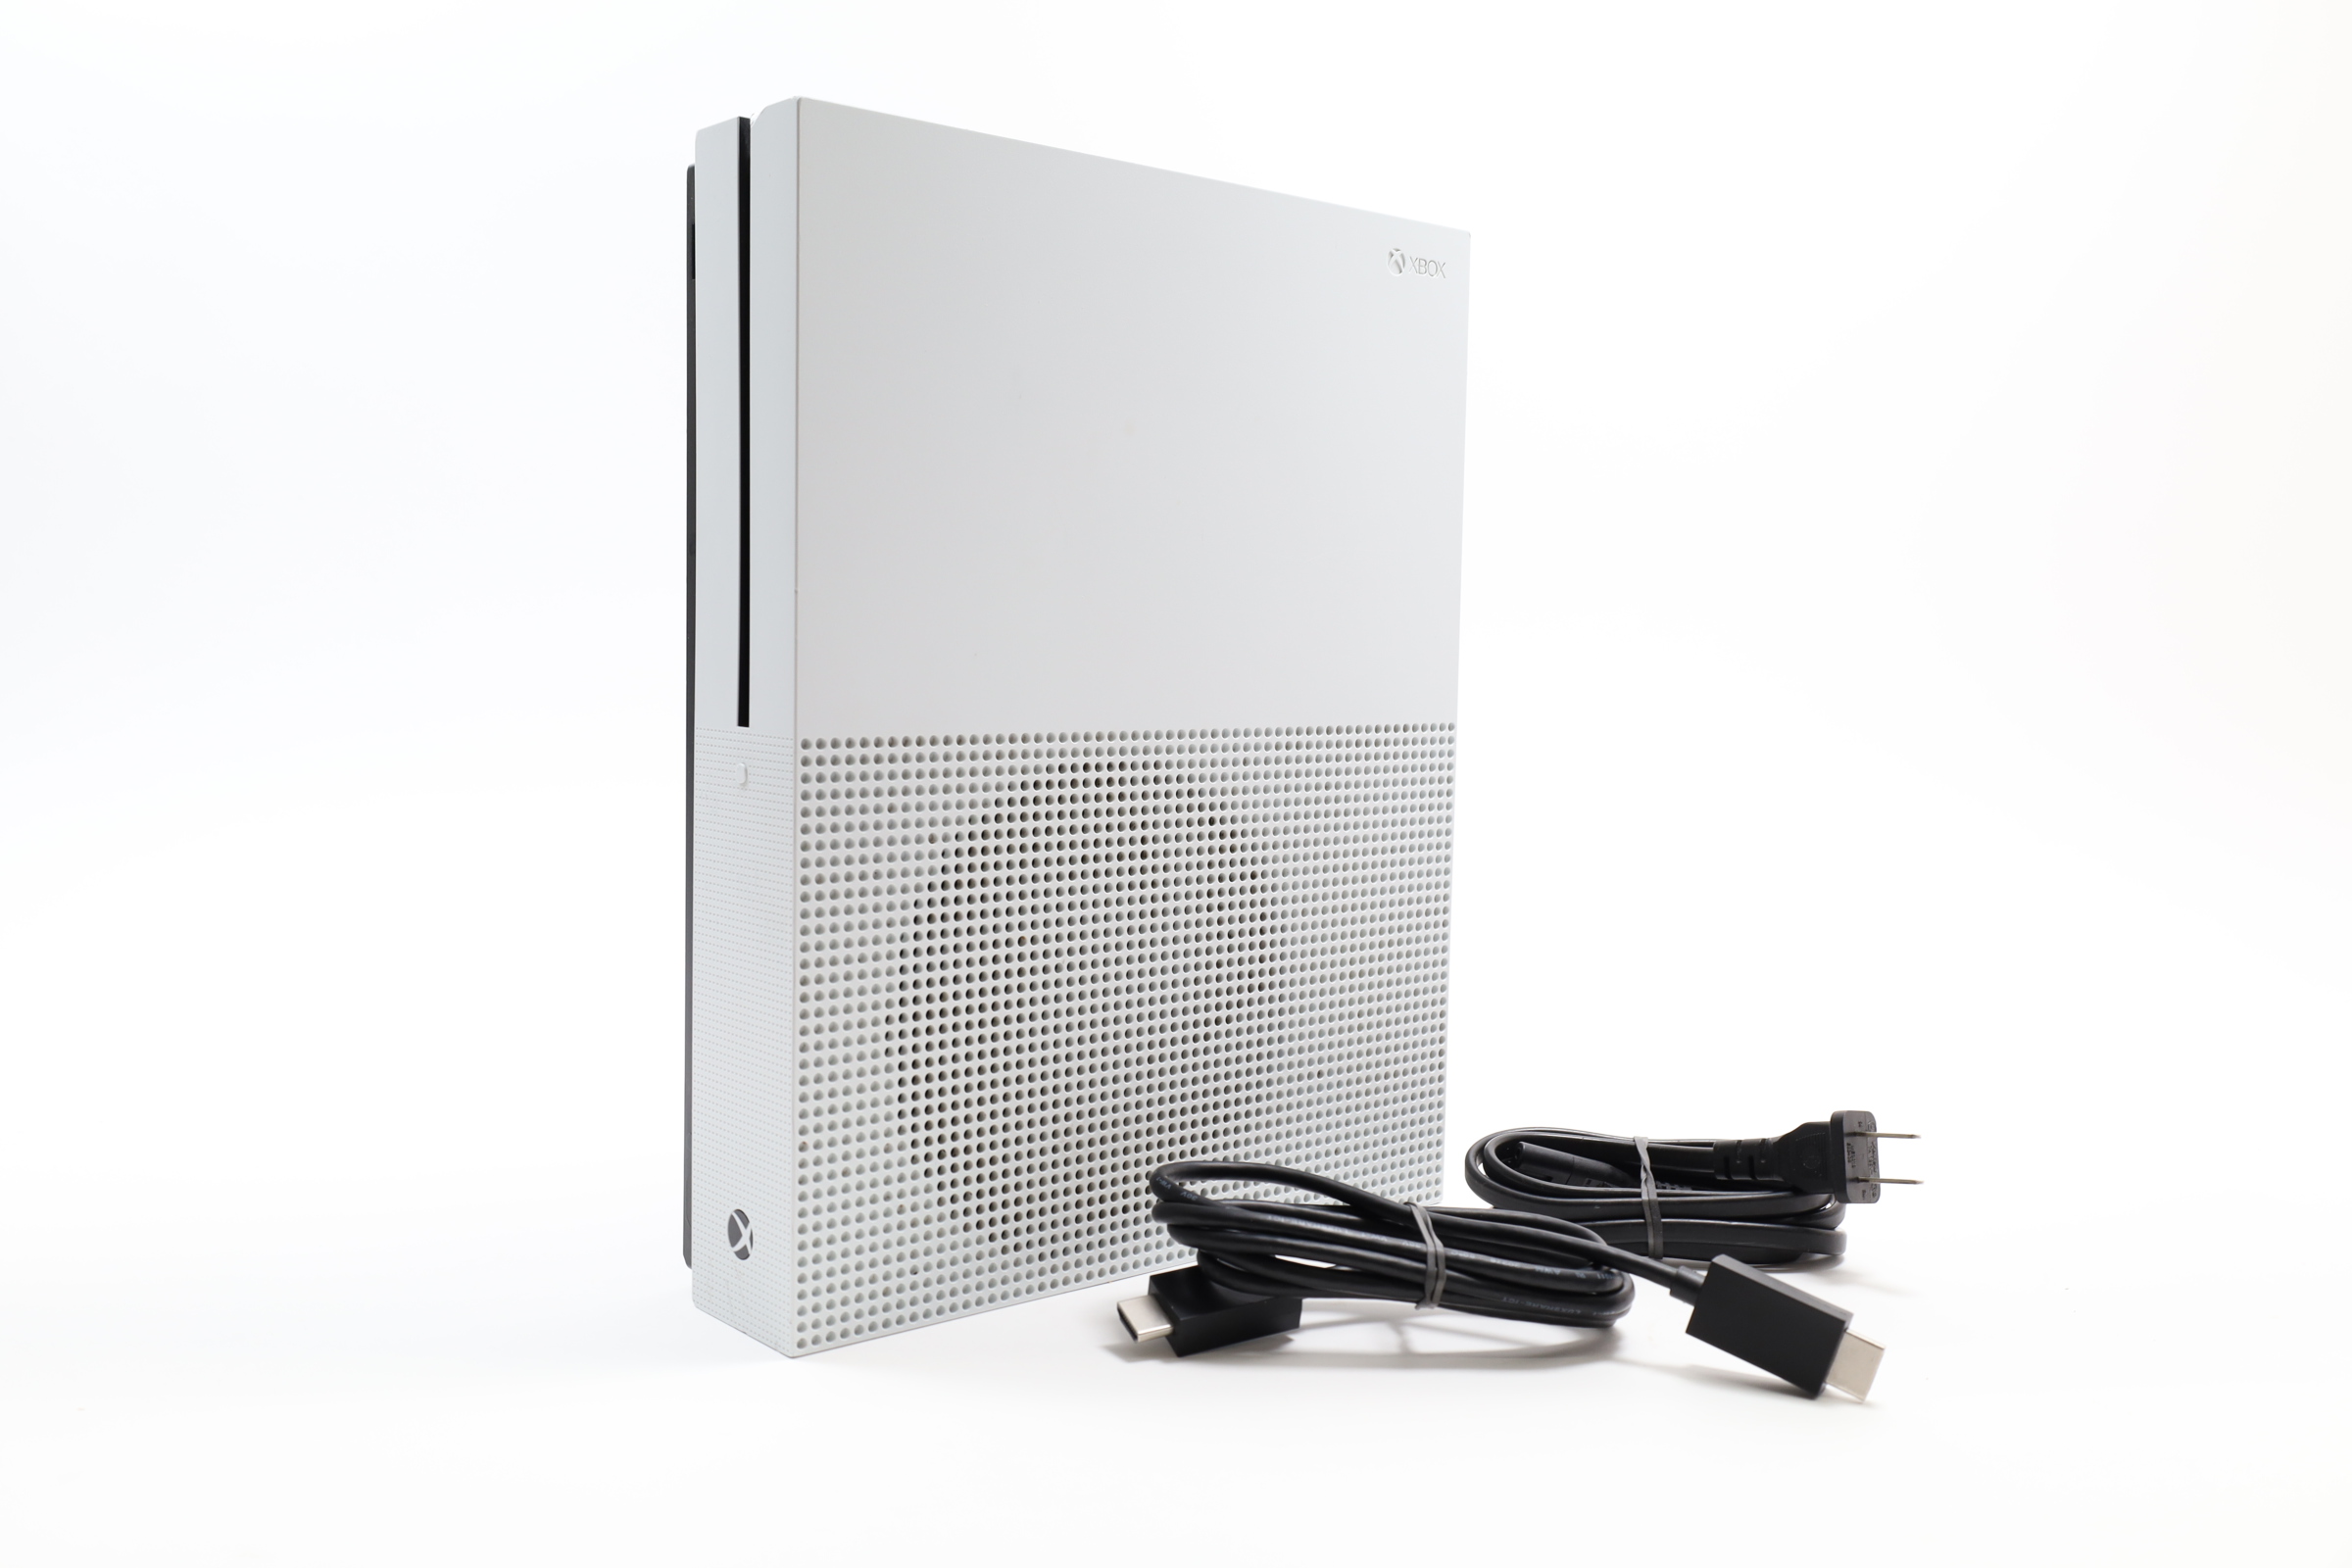 Microsoft Xbox One S 500GB Video Game Console - White (ZQ9-00001